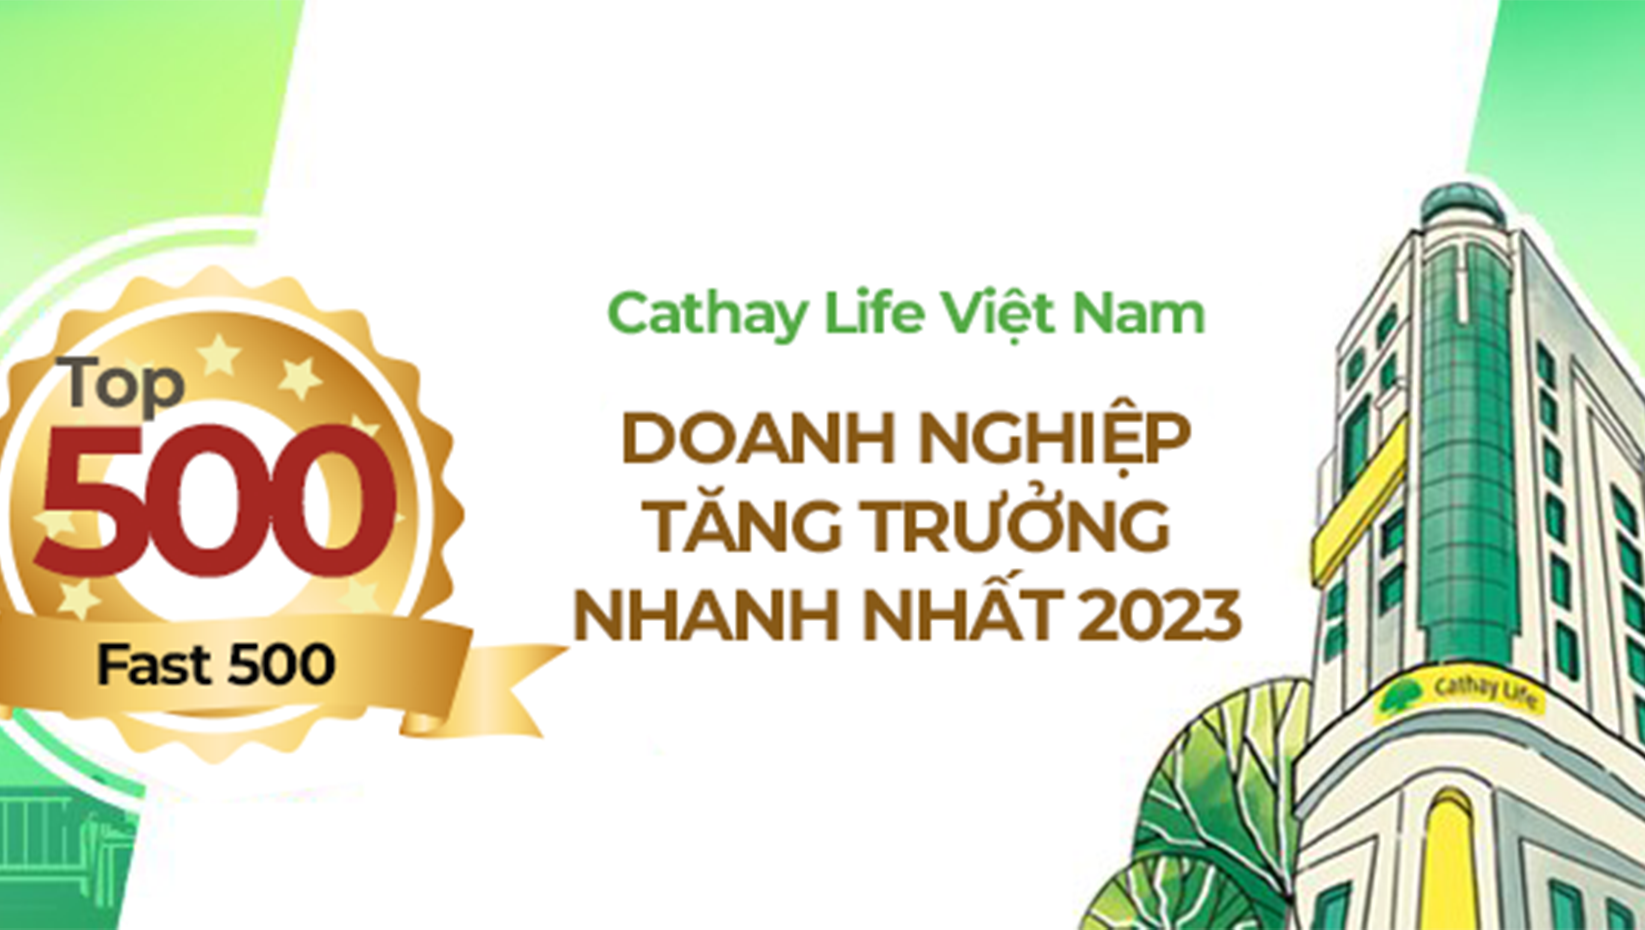 Bảo hiểm nhân thọ Cathay Life Việt Nam và Mirae Asset Prévoir đang là đối tác ngân hàng nào?